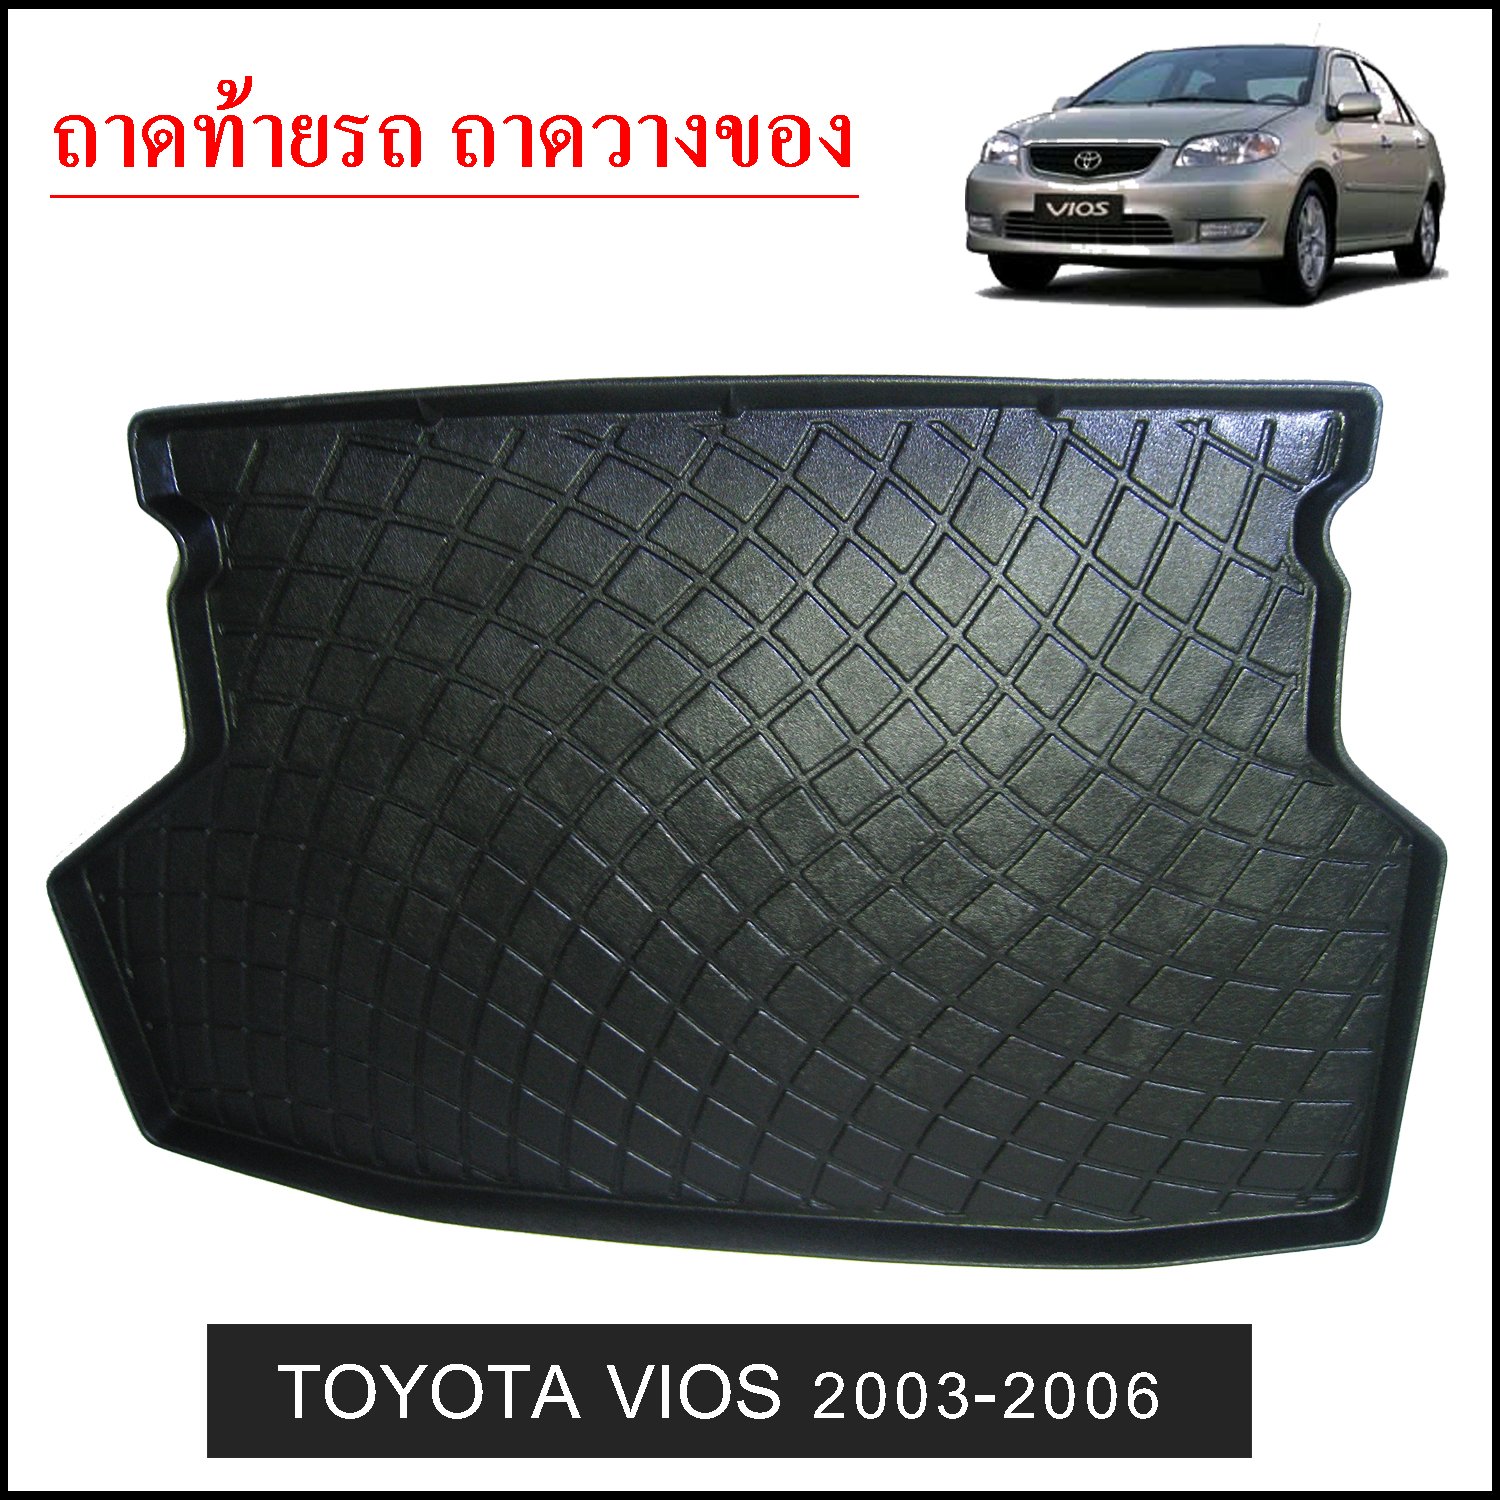 ถาดท้ายวางของ Toyota Vios 2003-2006